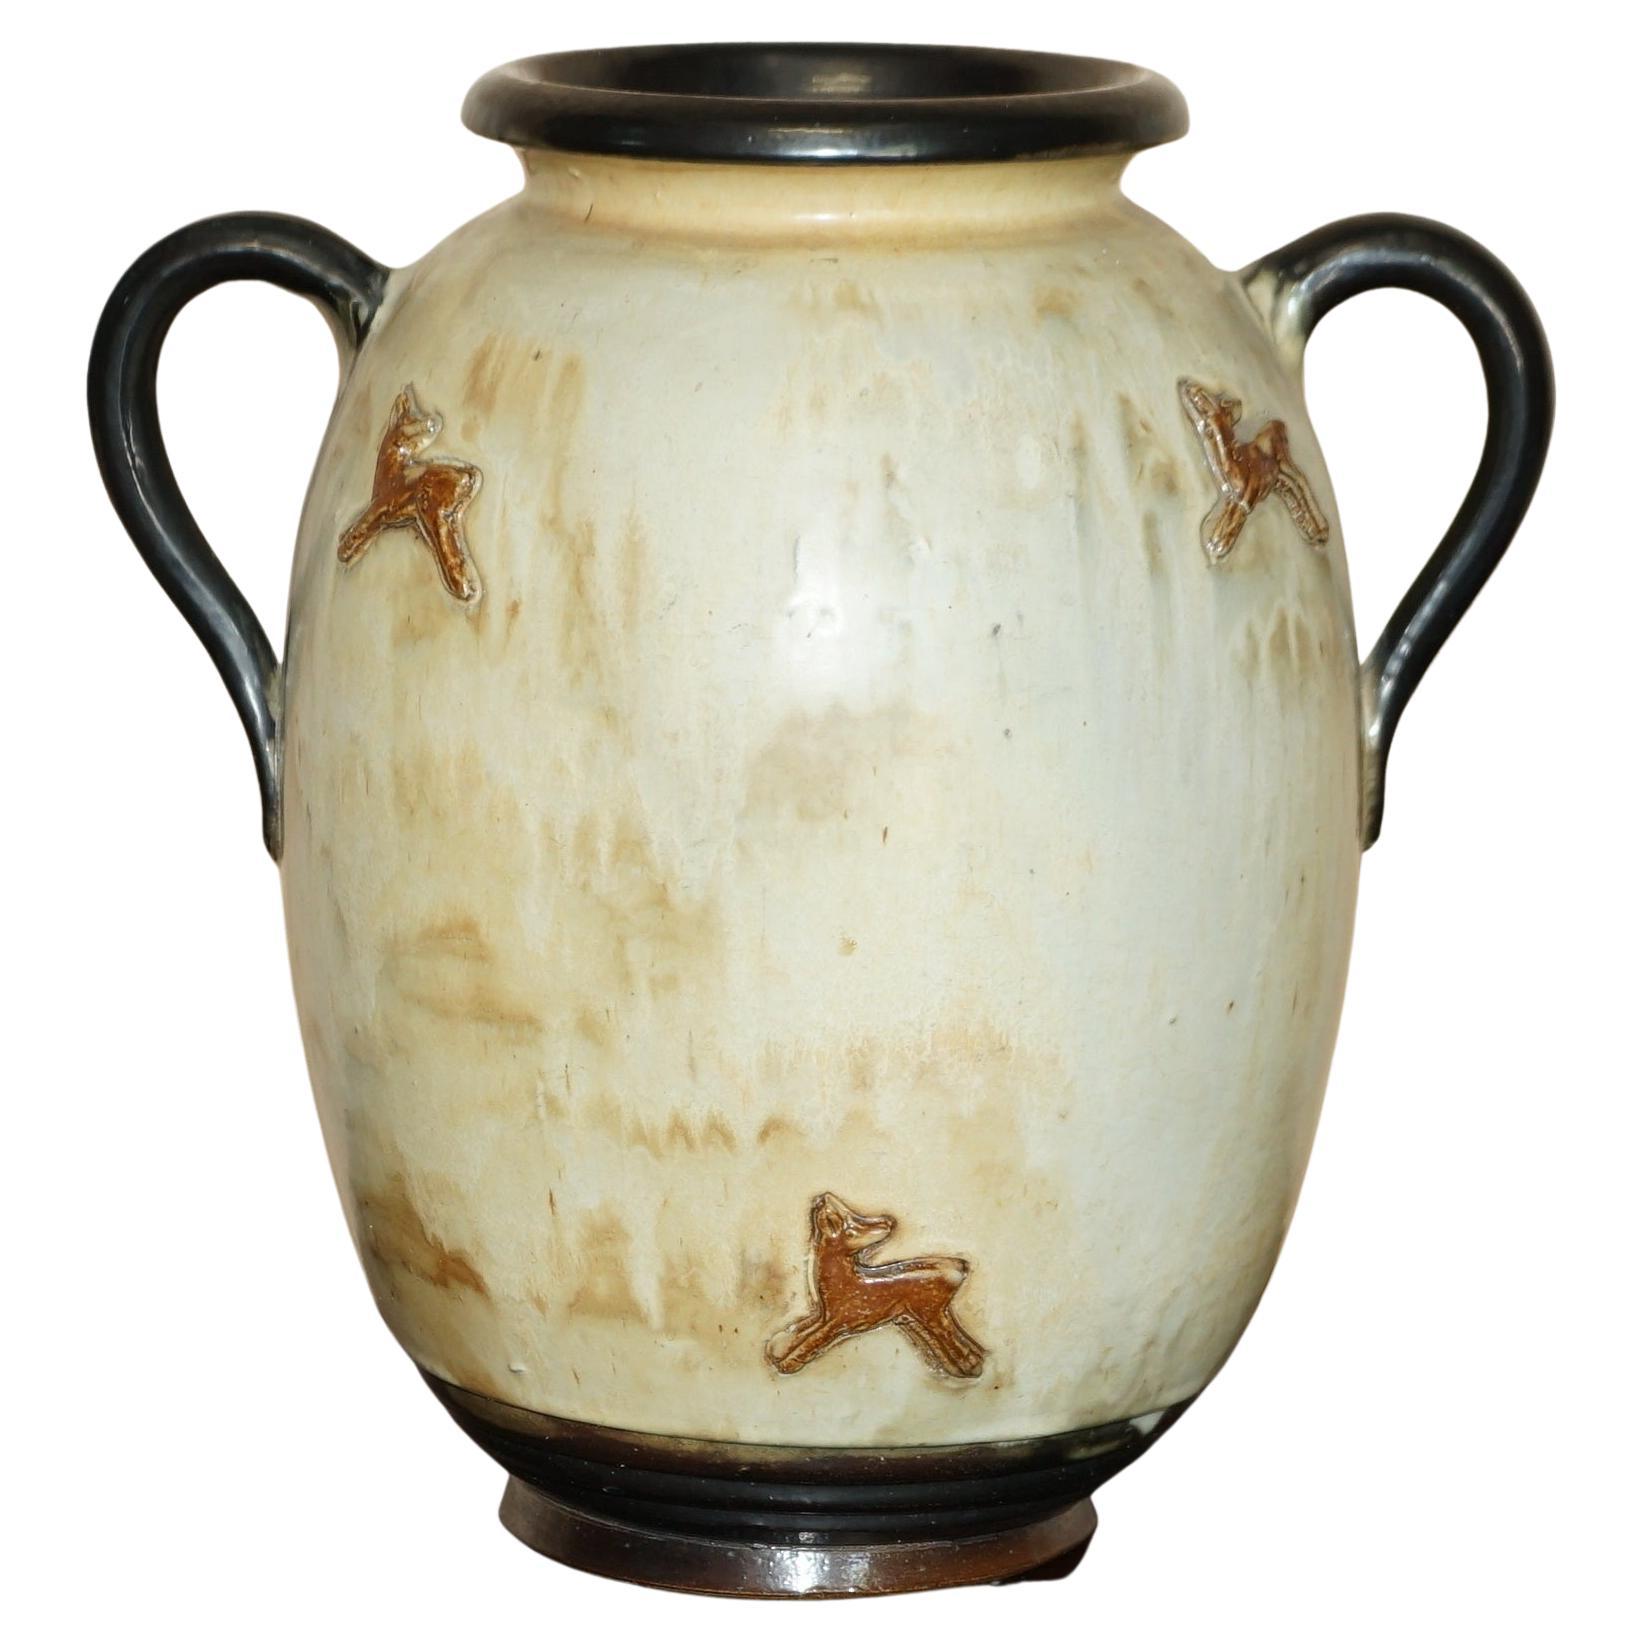 1 of 3 Signed Roger Guerin 1930 Deer Ceramic Stoneware Pottery Handle Vase Pots For Sale